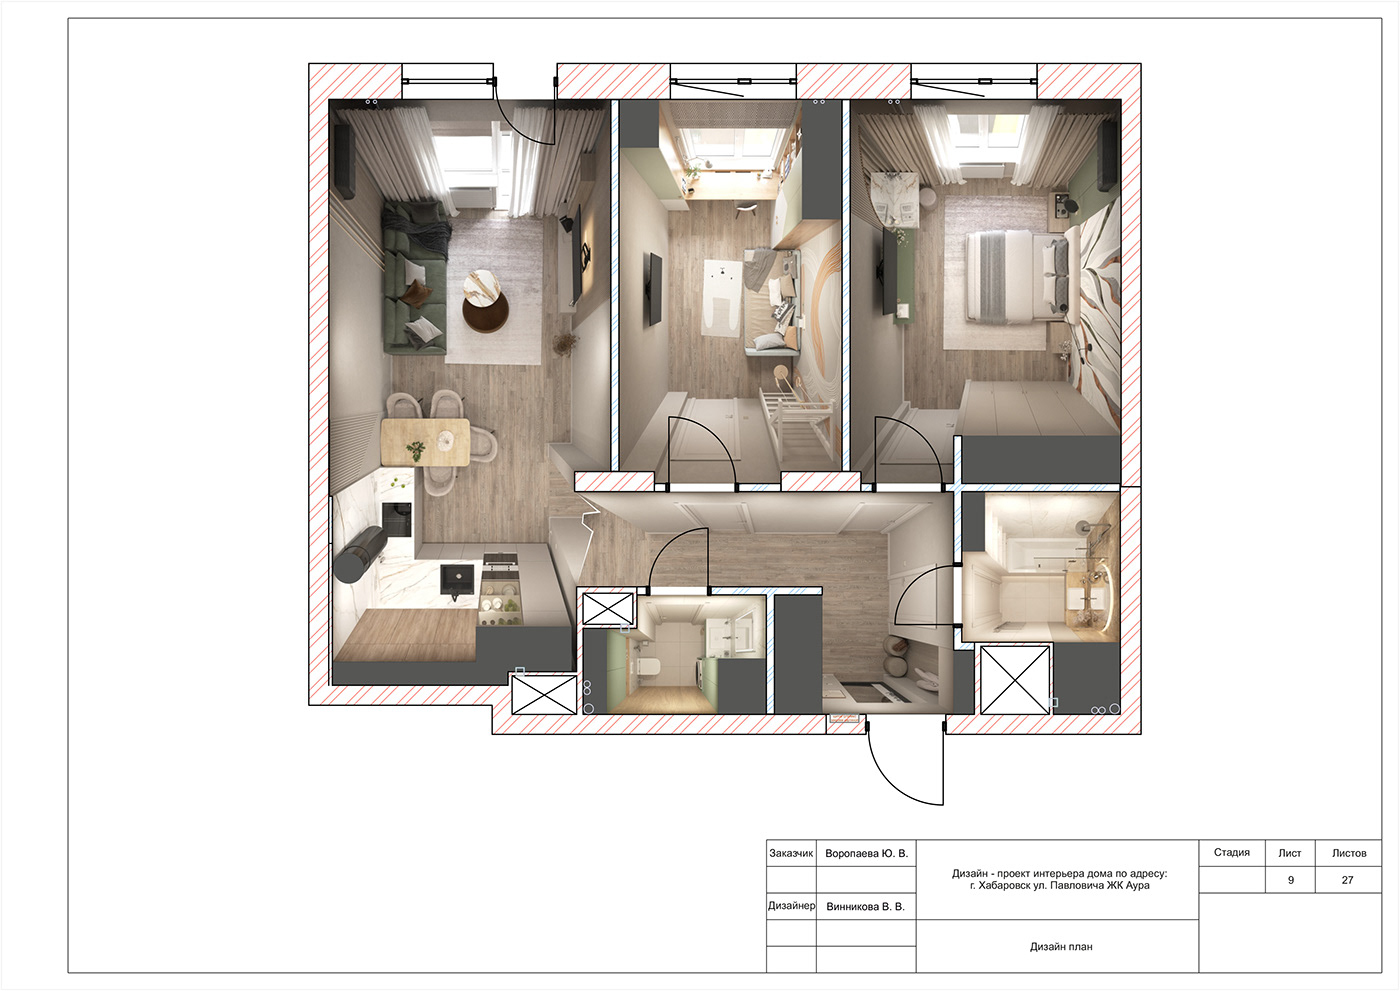 дизайн интерьера проект интерьер Interior design дизайн кухни  дизайн гостиной гостиная   спальня детская